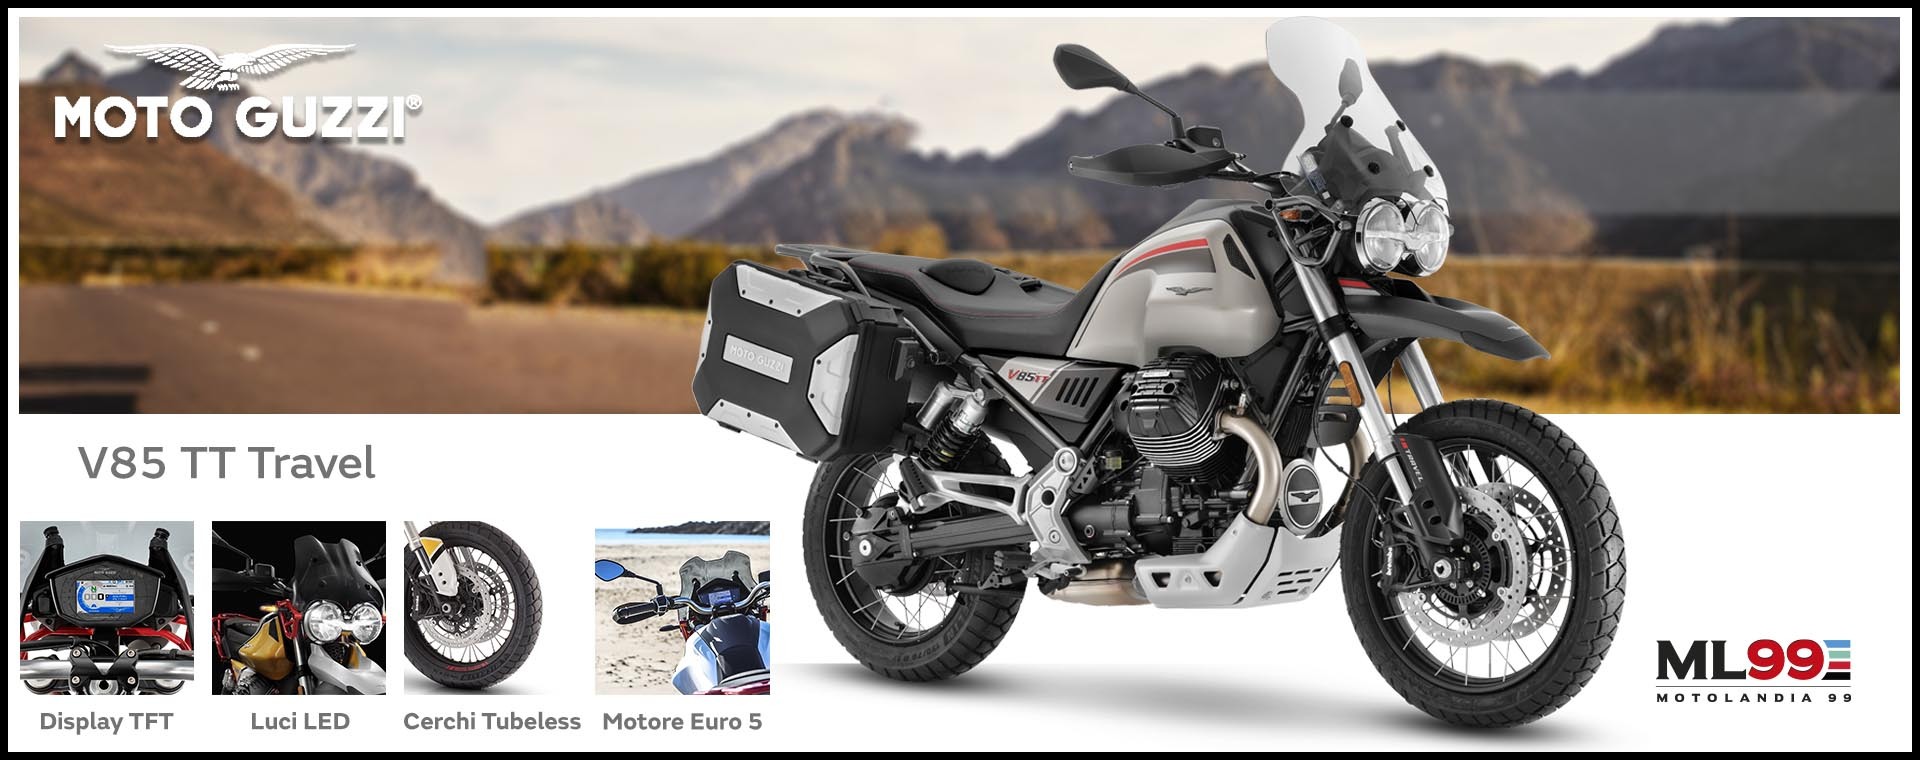 ML99 Promozione Moto Guzzi V85 TT Travel | Dettagli e vista generale